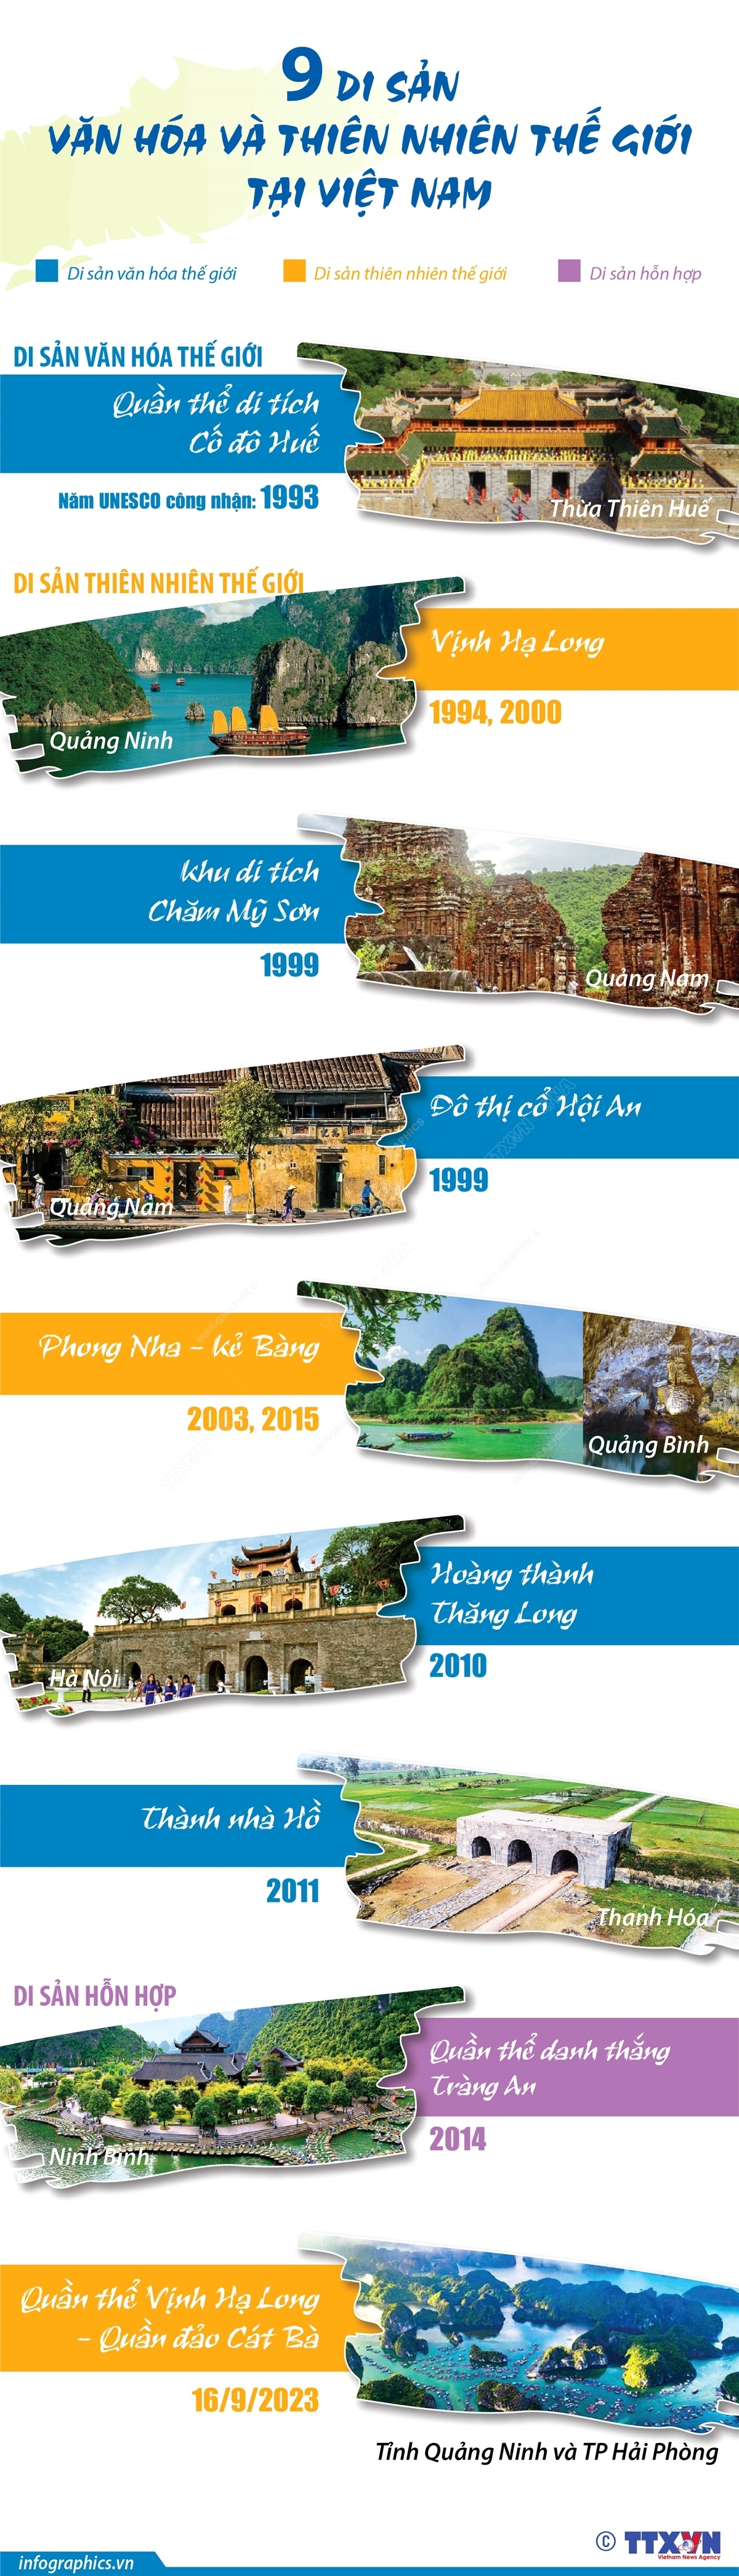 Điểm danh 9 di sản văn hóa và thiên nhiên thế giới tại Việt Nam - Ảnh 1.